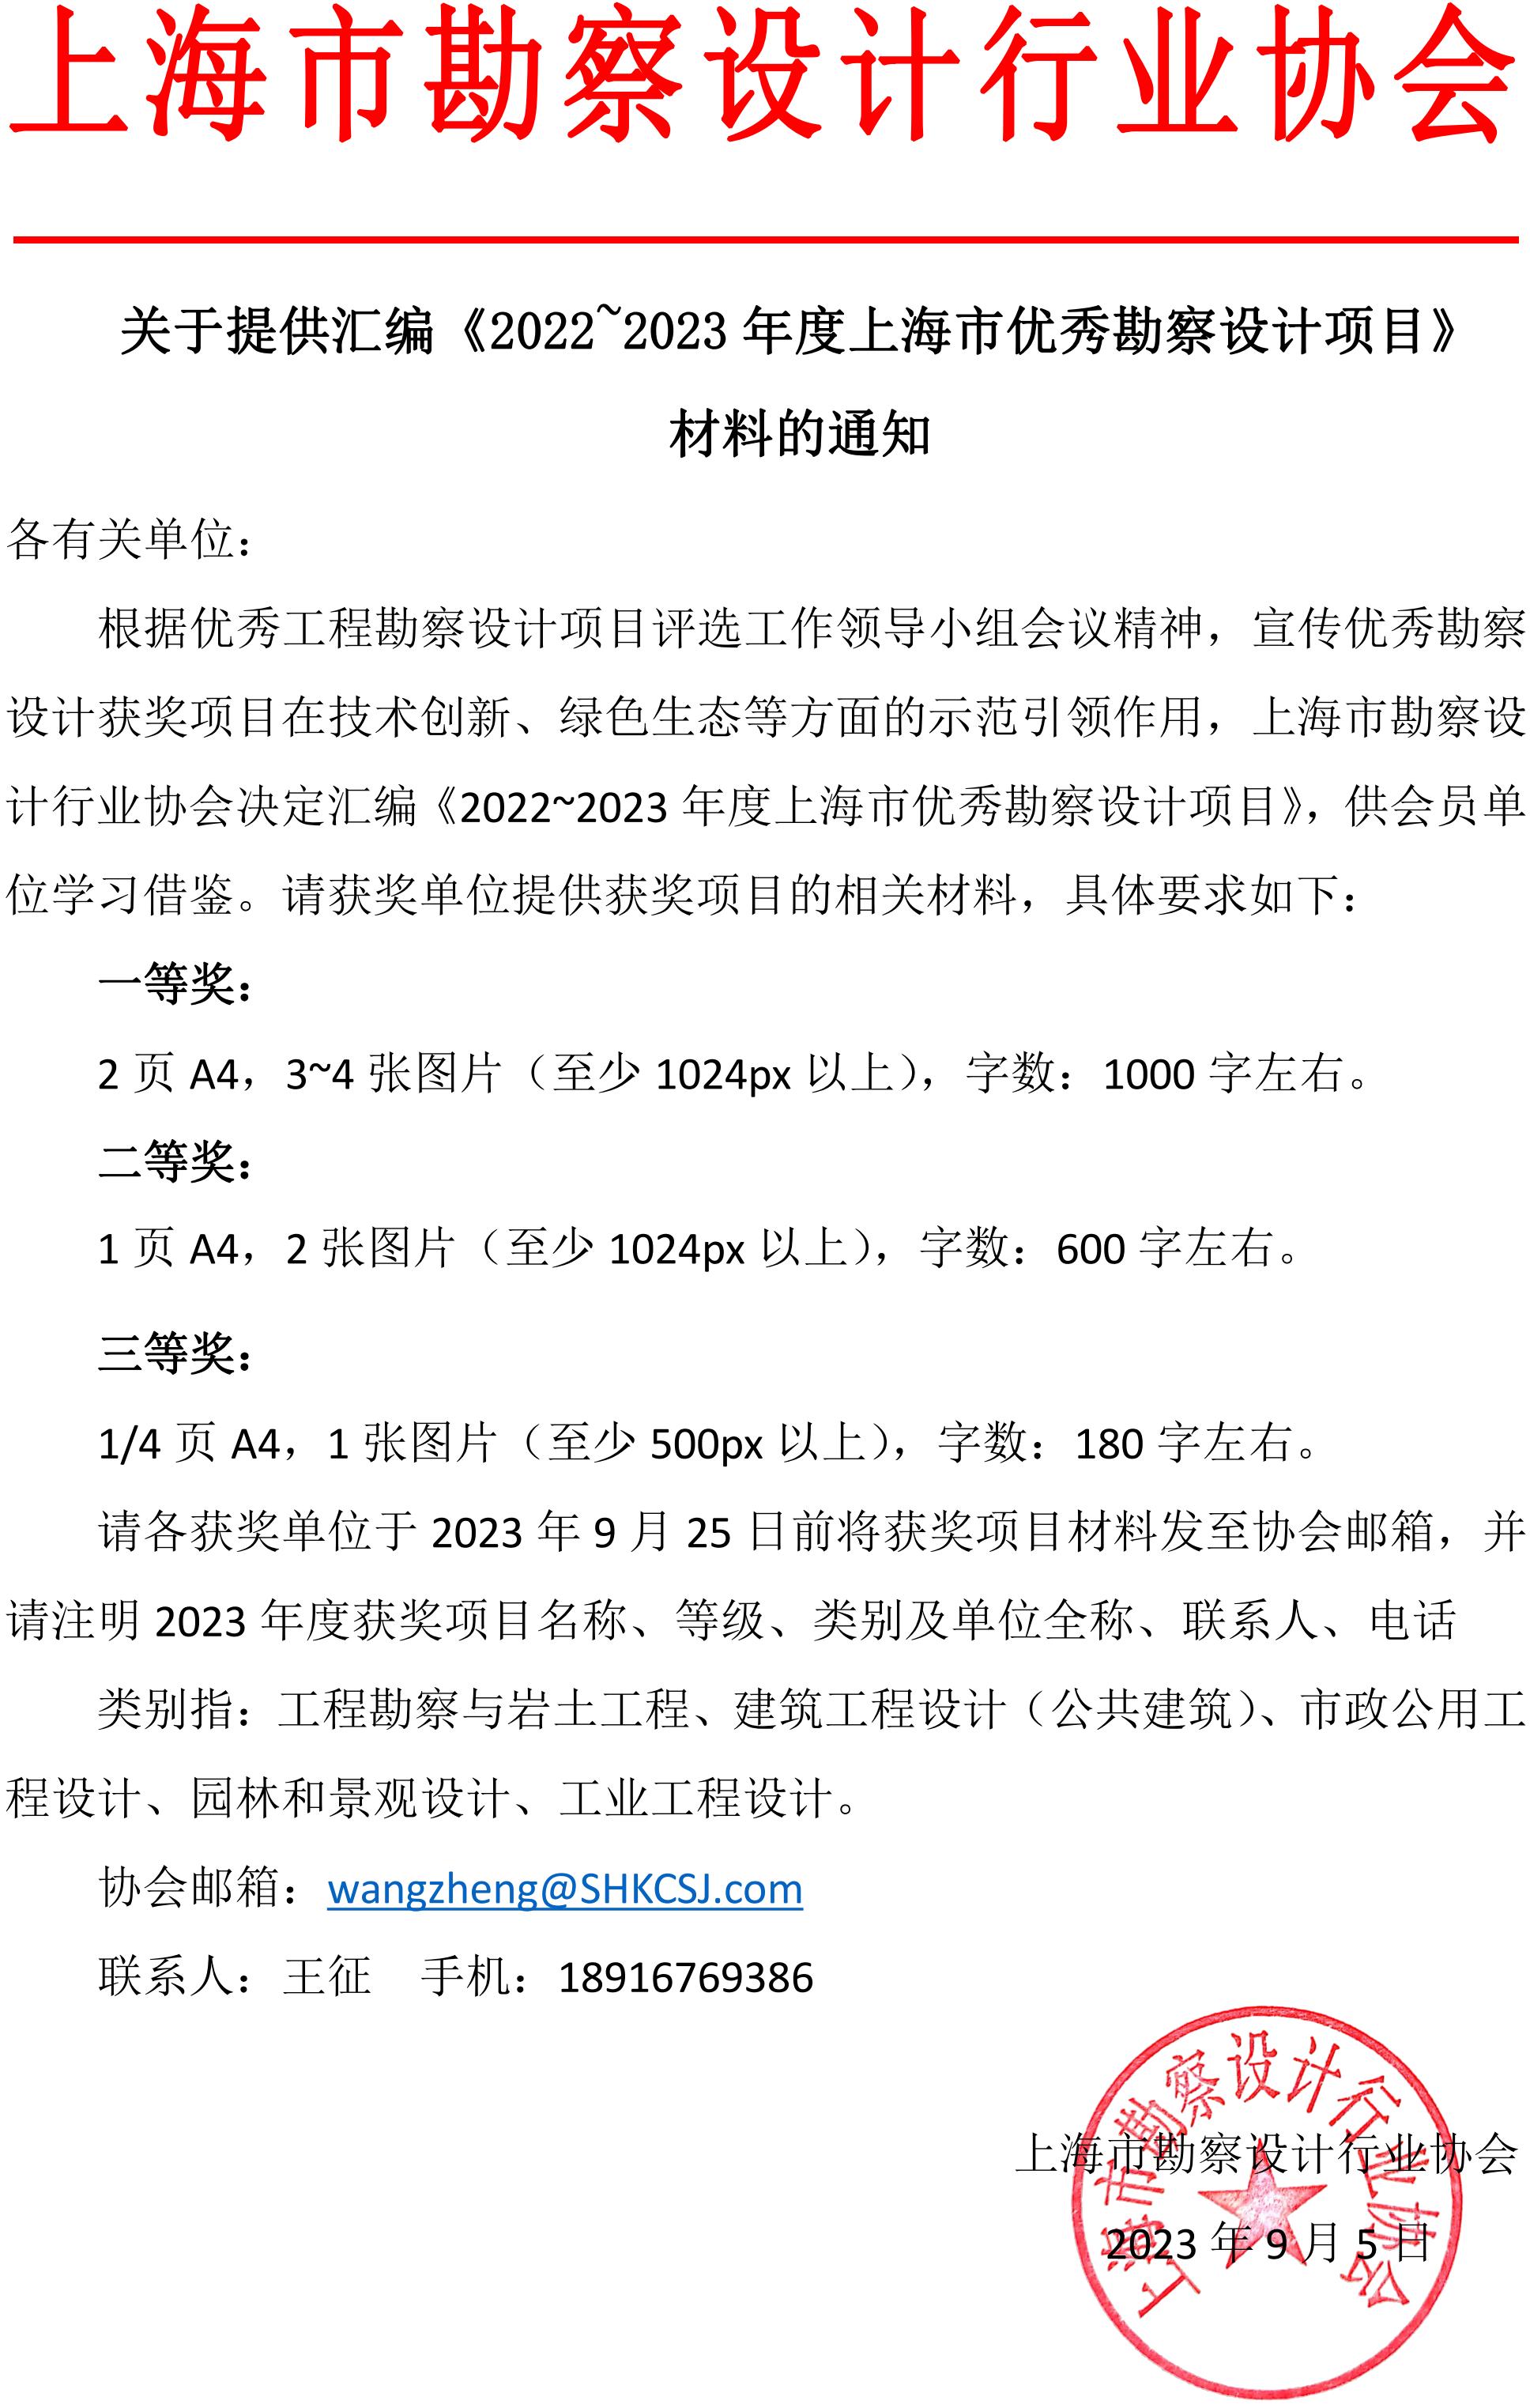 关于提供汇编《2022-2023年度上海市优秀勘察设计项目》材料的通知_00.jpg